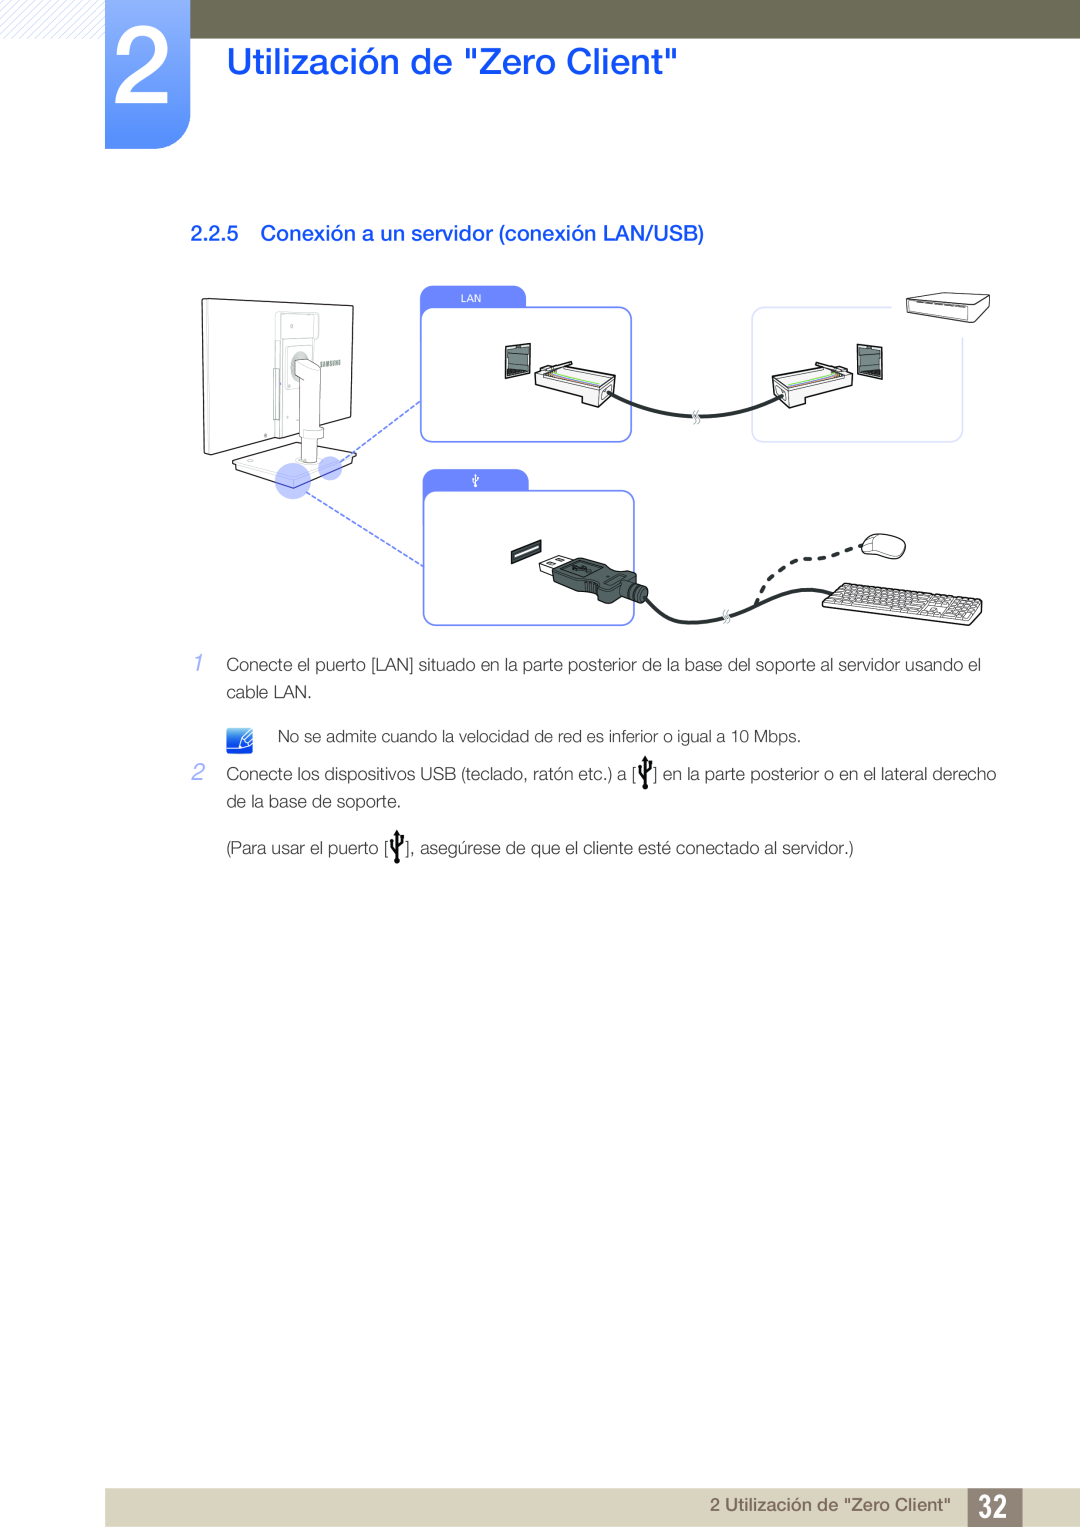 Samsung LF22TSCTBAN/EN, LF19TSCTBAN/EN, LF24TSCTBAN/EN Conexión a un servidor conexión LAN/USB, Utilización de Zero Client 